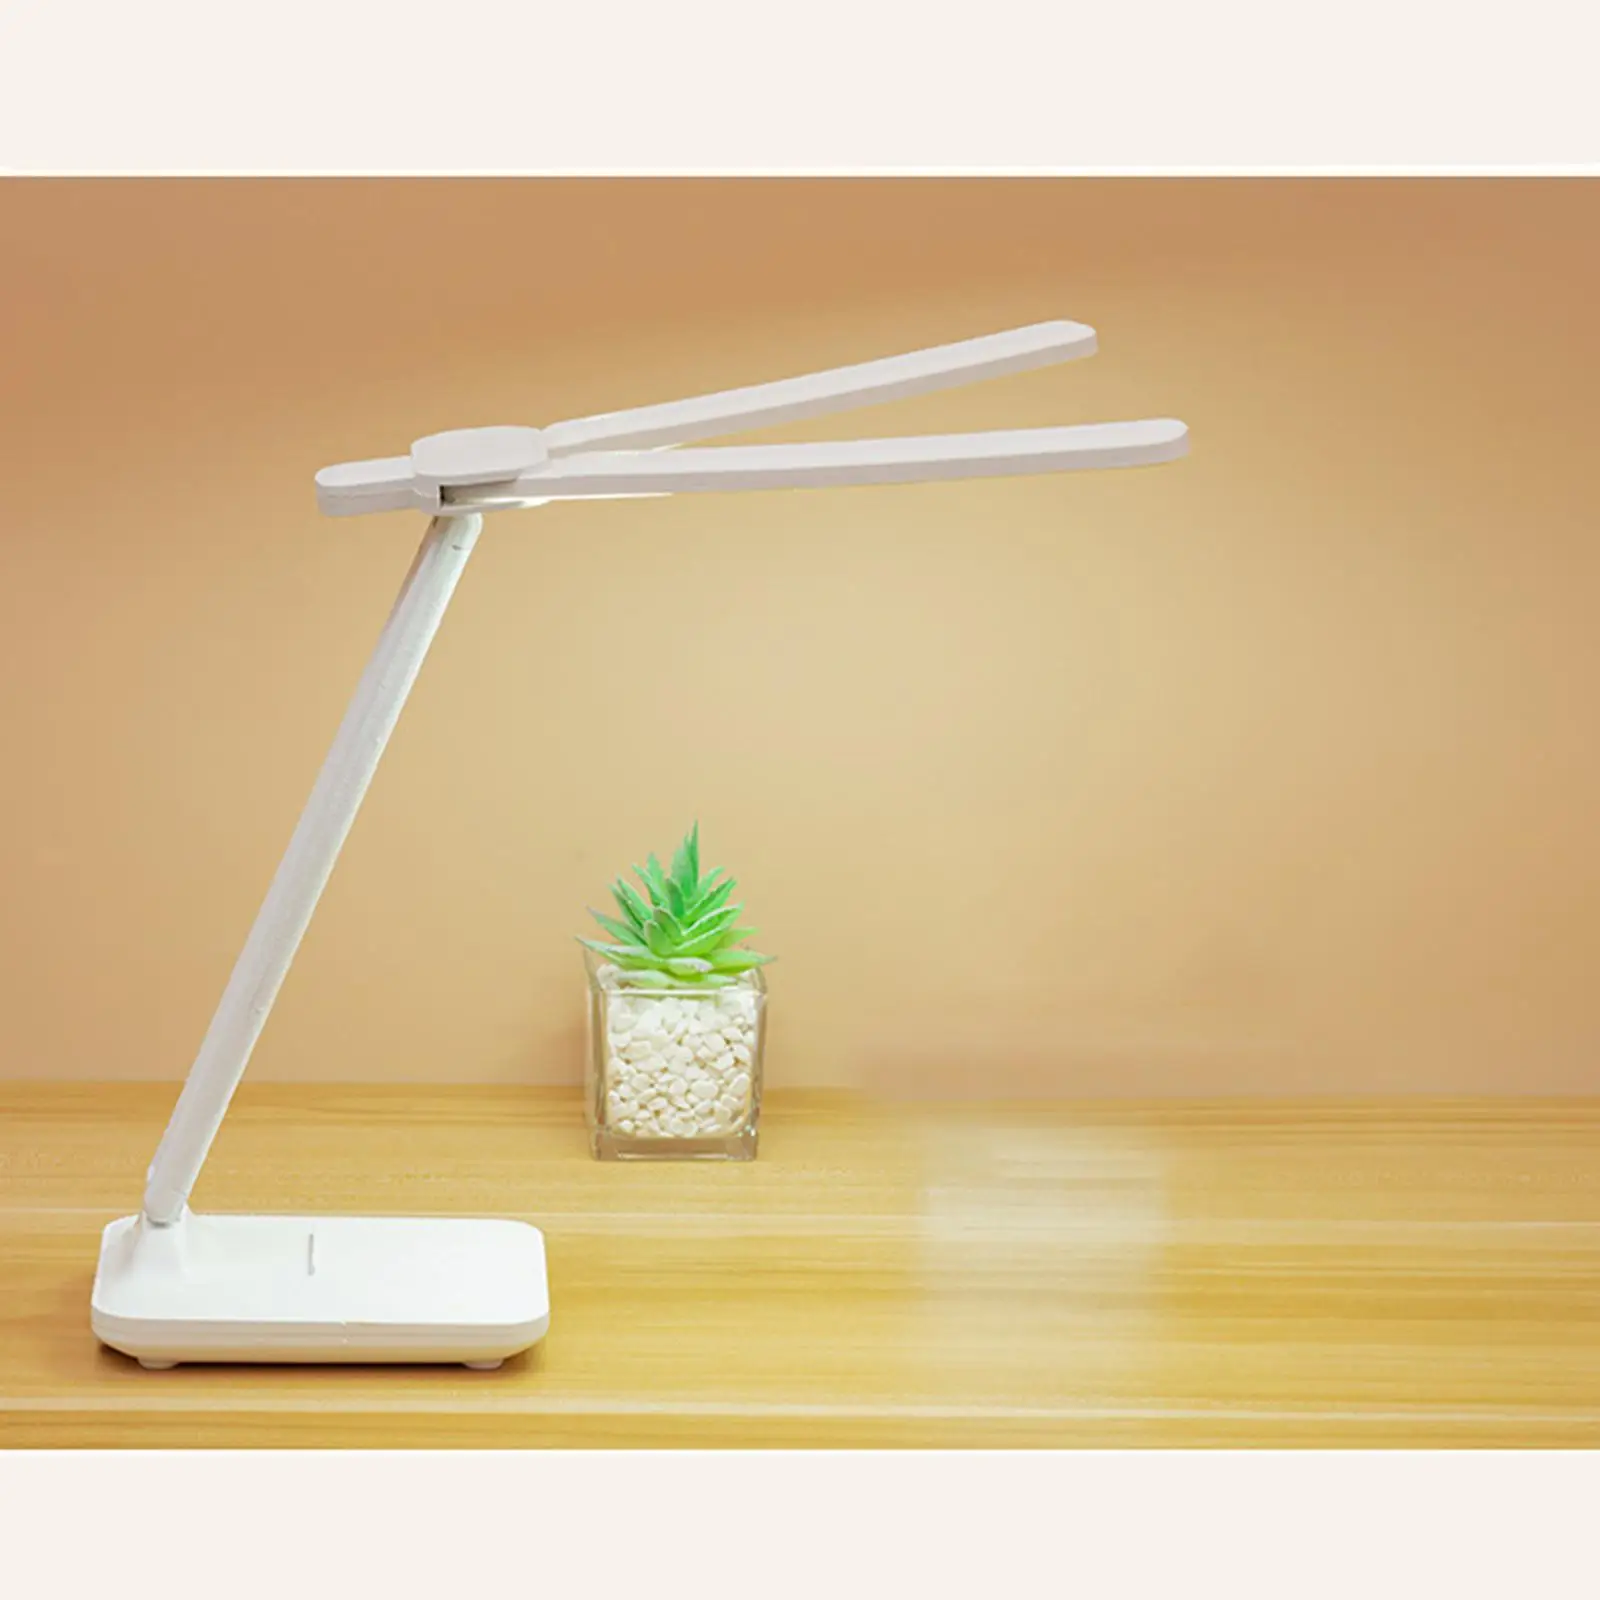 LED Desk Light with Pen Holder Phone Holder Double for Office NightStand